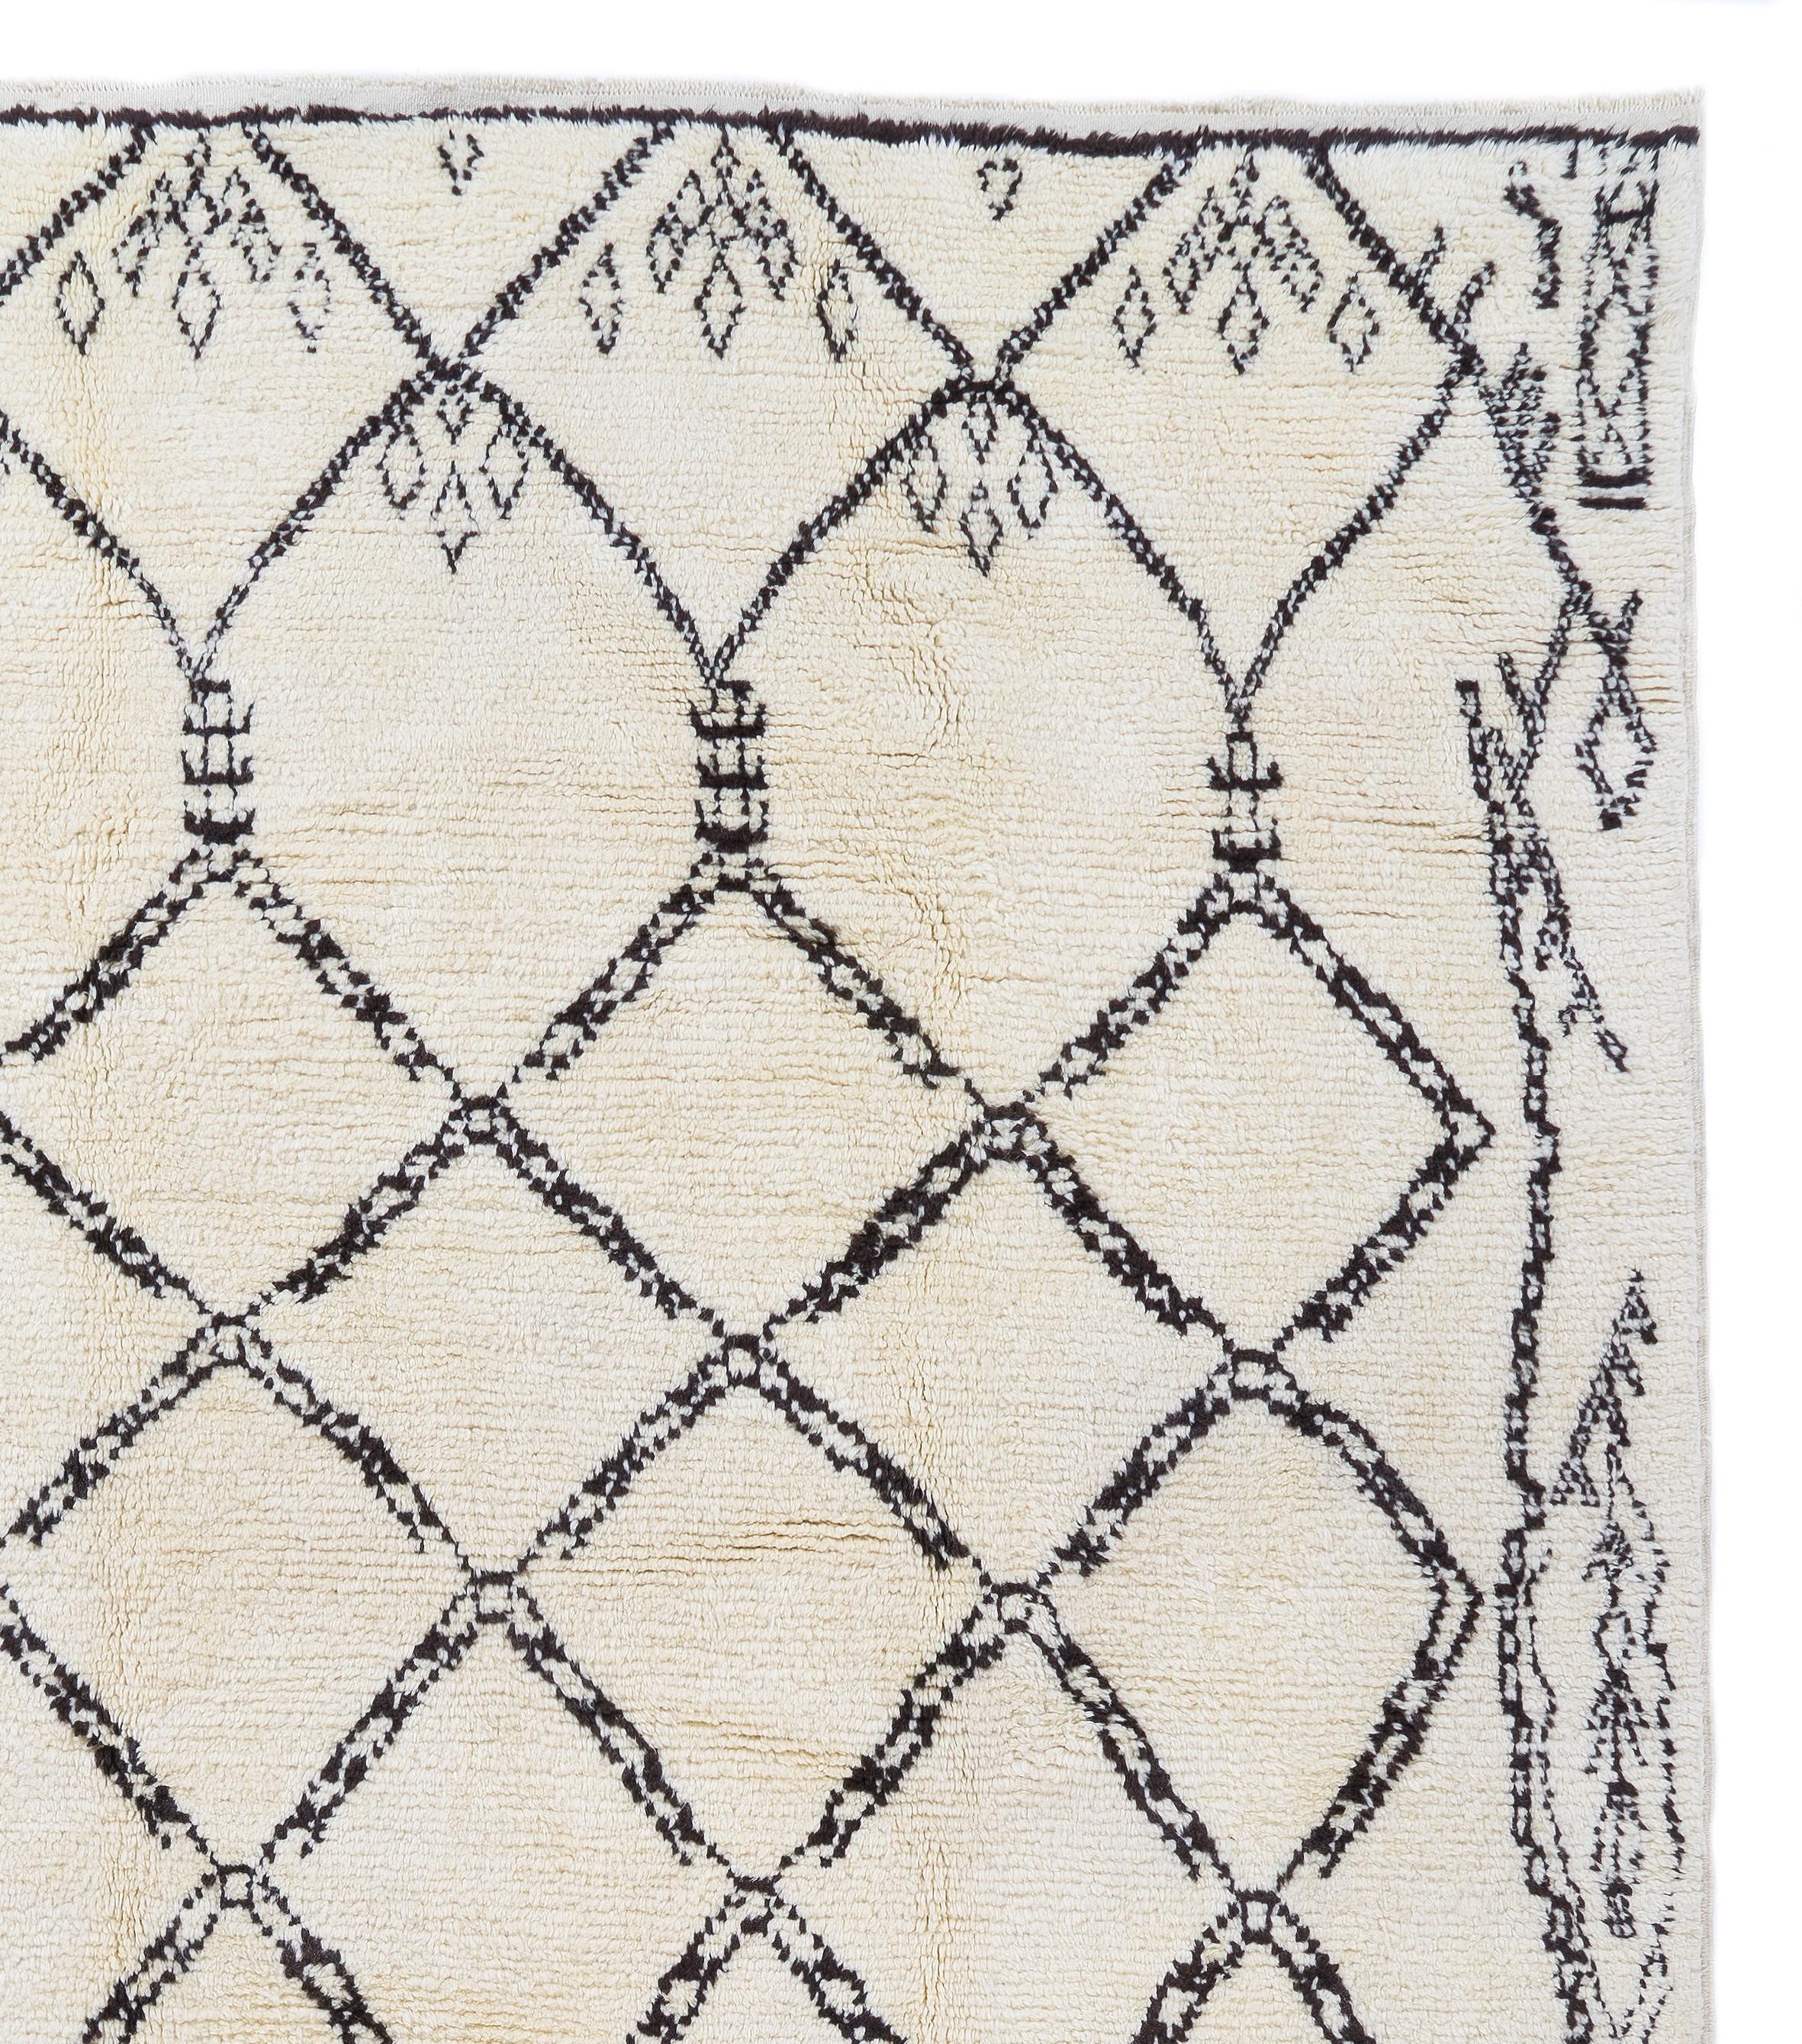 Ein moderner handgeknüpfter marokkanischer Teppich aus pflanzengefärbter Schafwolle. 
Weicher, komfortabler Flor, ideal für Familien mit Kindern.
Erhältlich so wie er ist oder nach Maß in jeder gewünschten Größe und Farbkombination.